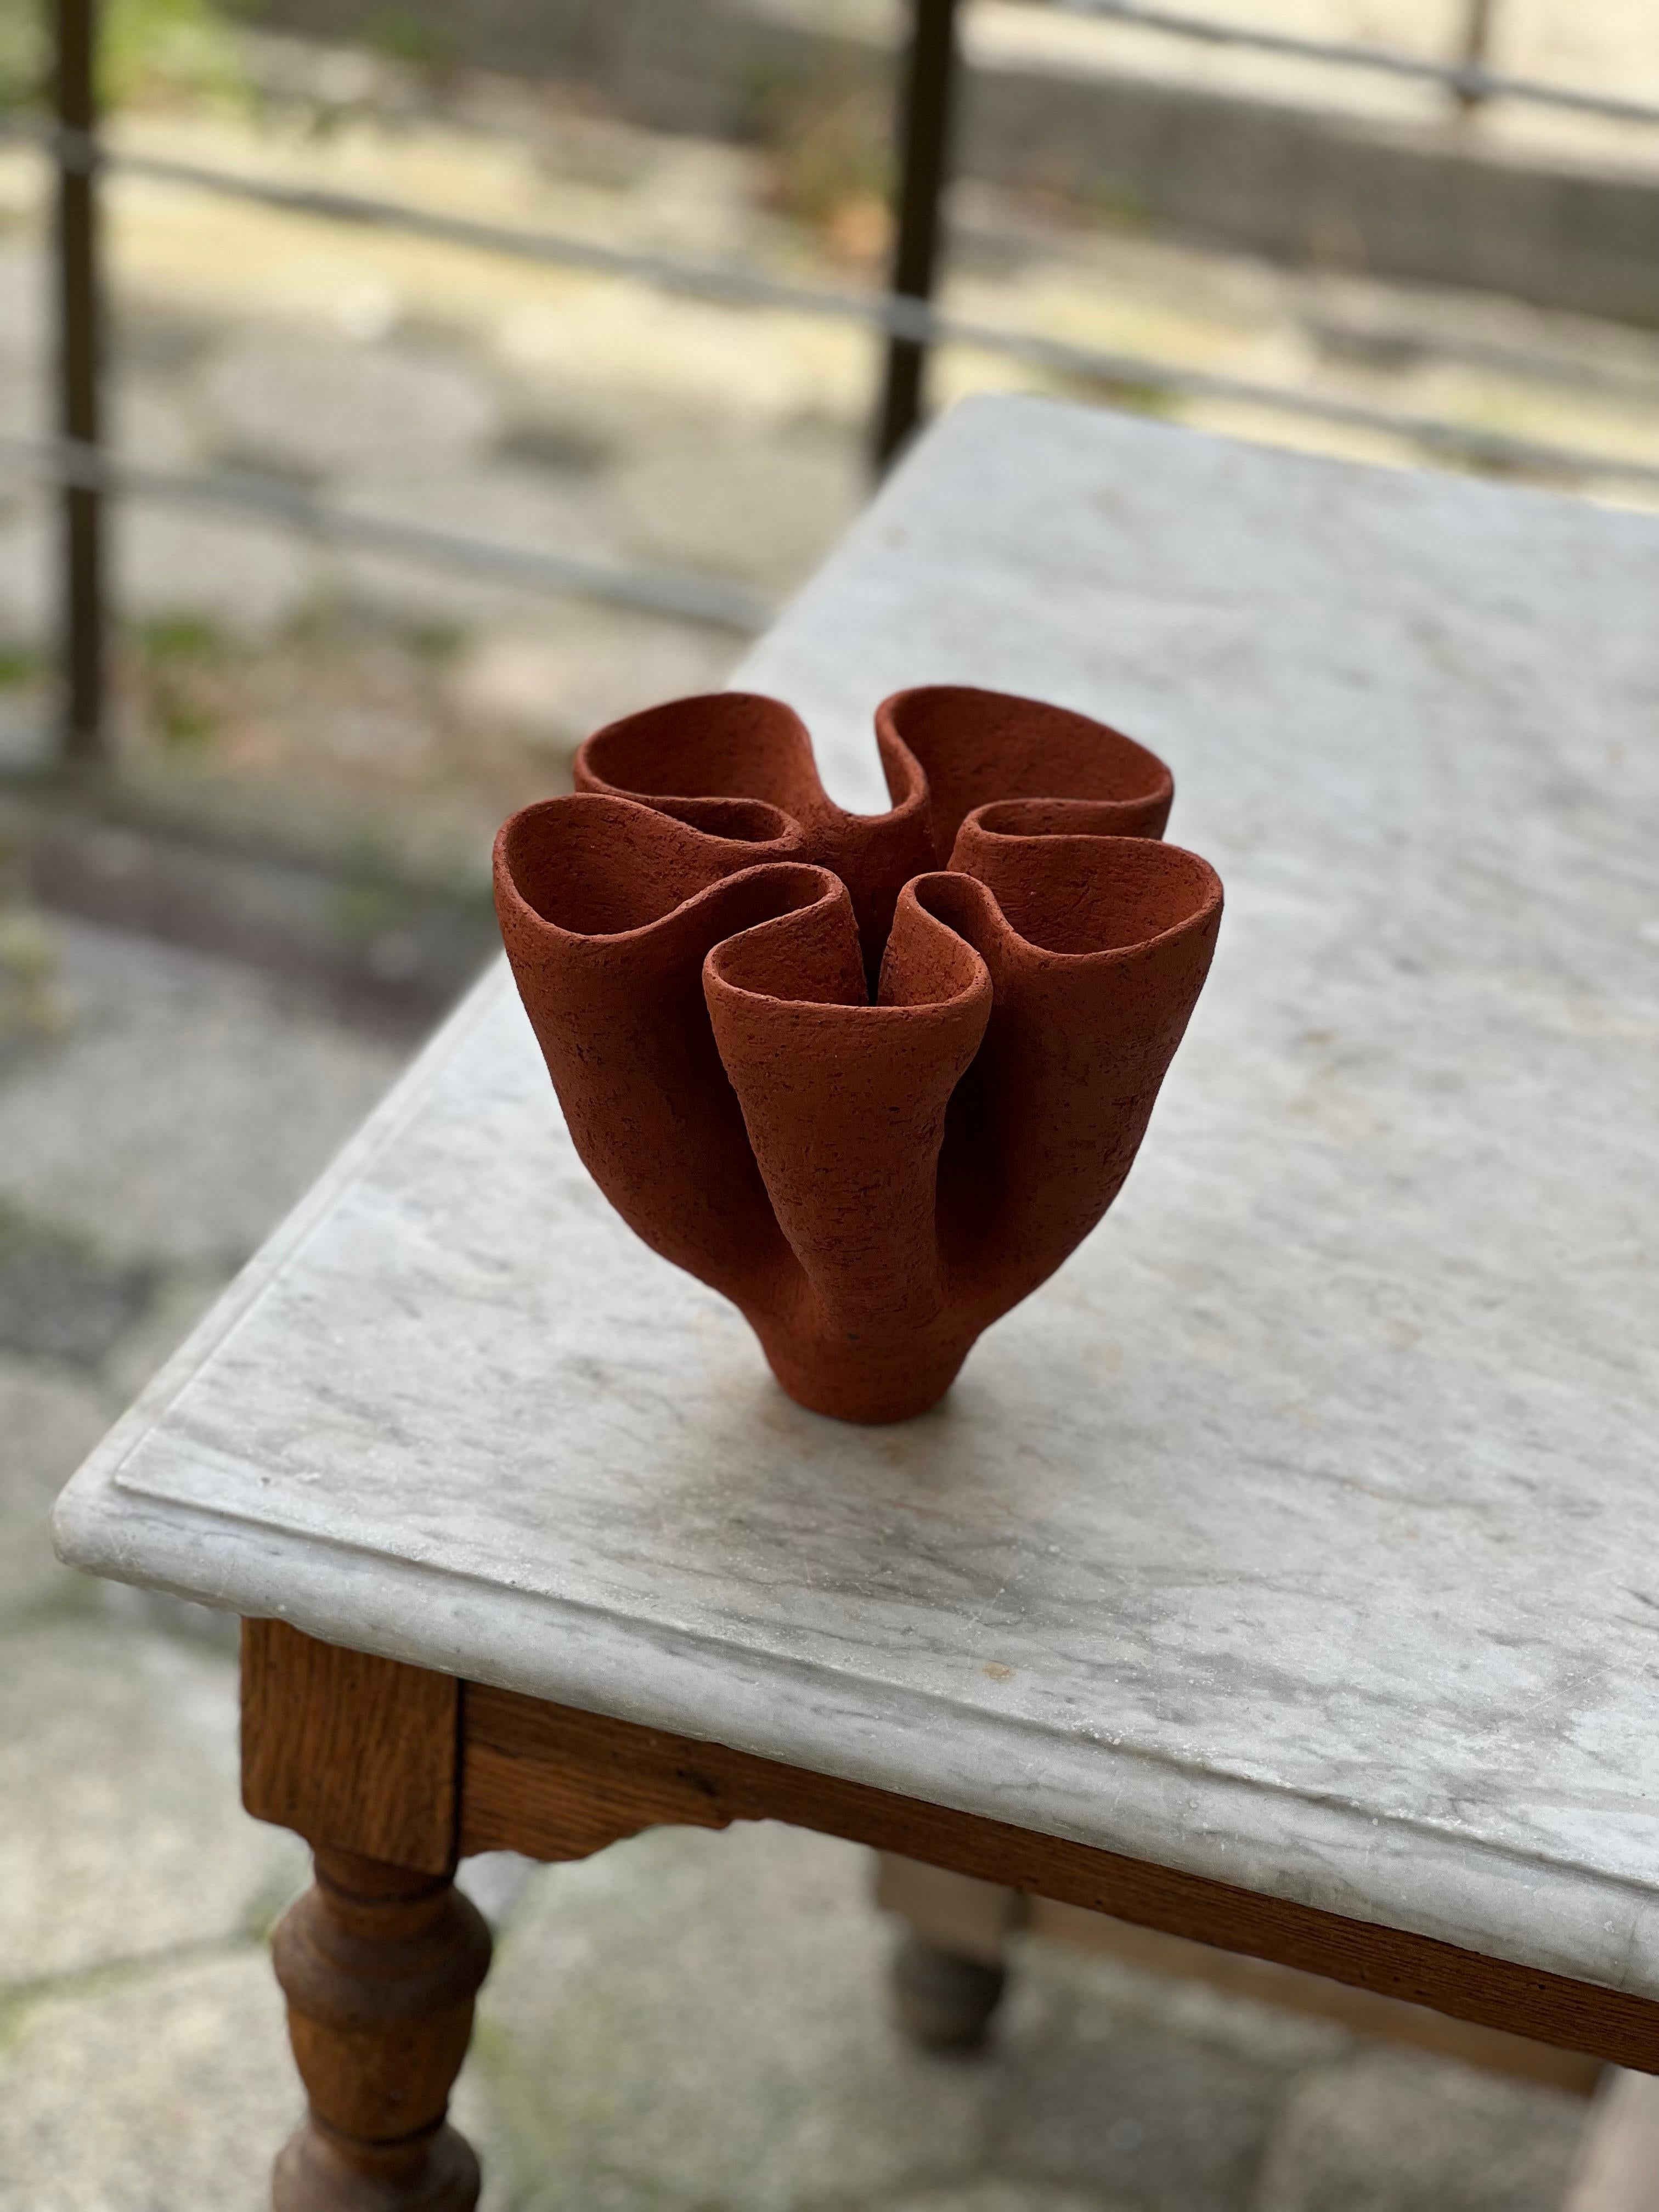 Anatolische 4-Vase von Güler Elçi
Abmessungen: B 18,2 x T 18,2 x H 16,5 cm.
MATERIALIEN: Steingut Keramik.

Güler Elçi ist eine in Istanbul ansässige Keramikkünstlerin. Vor dem Hintergrund ihrer Karriere als Ingenieurin betrachtet sie Keramik als